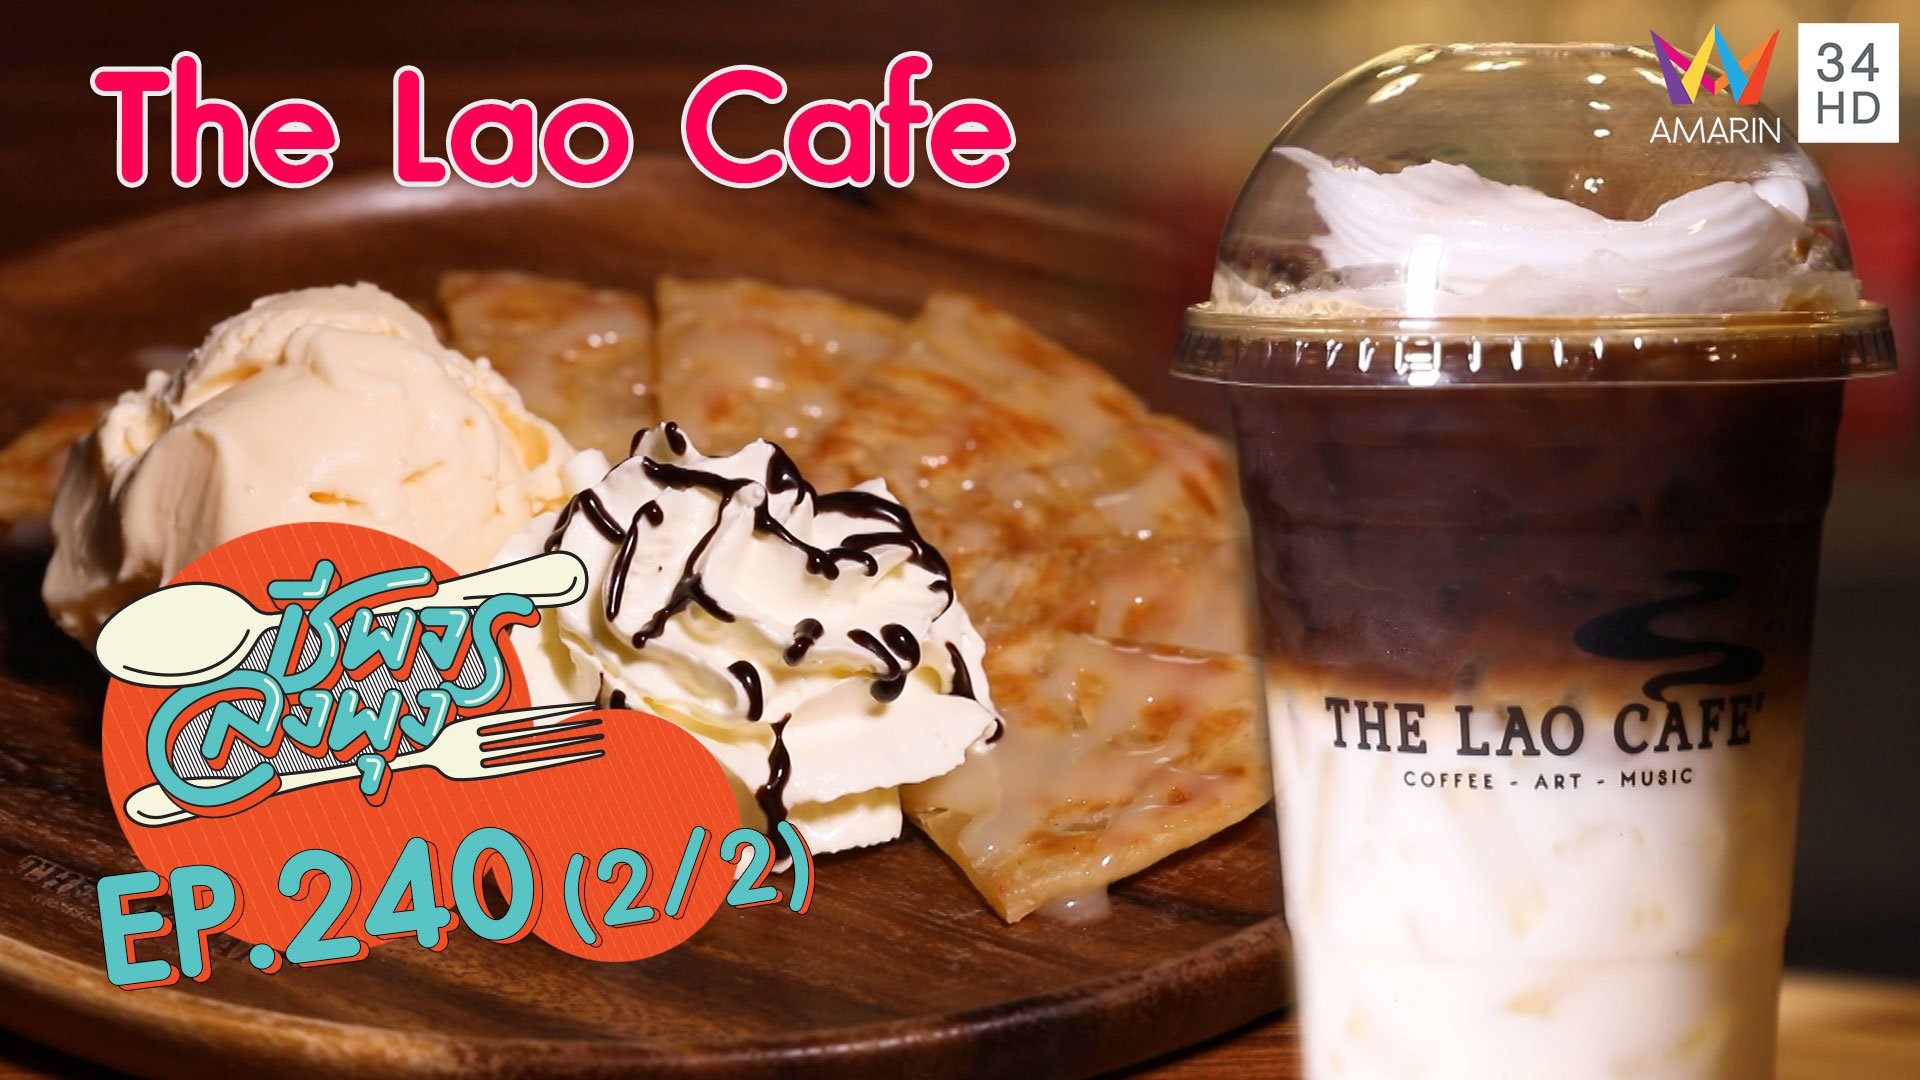 จิบกาแฟกับธรรมชาติ @ "ร้าน The Lao Cafe"  | ชีพจรลงพุง | 26 ก.ย. 63 (2/2) | AMARIN TVHD34